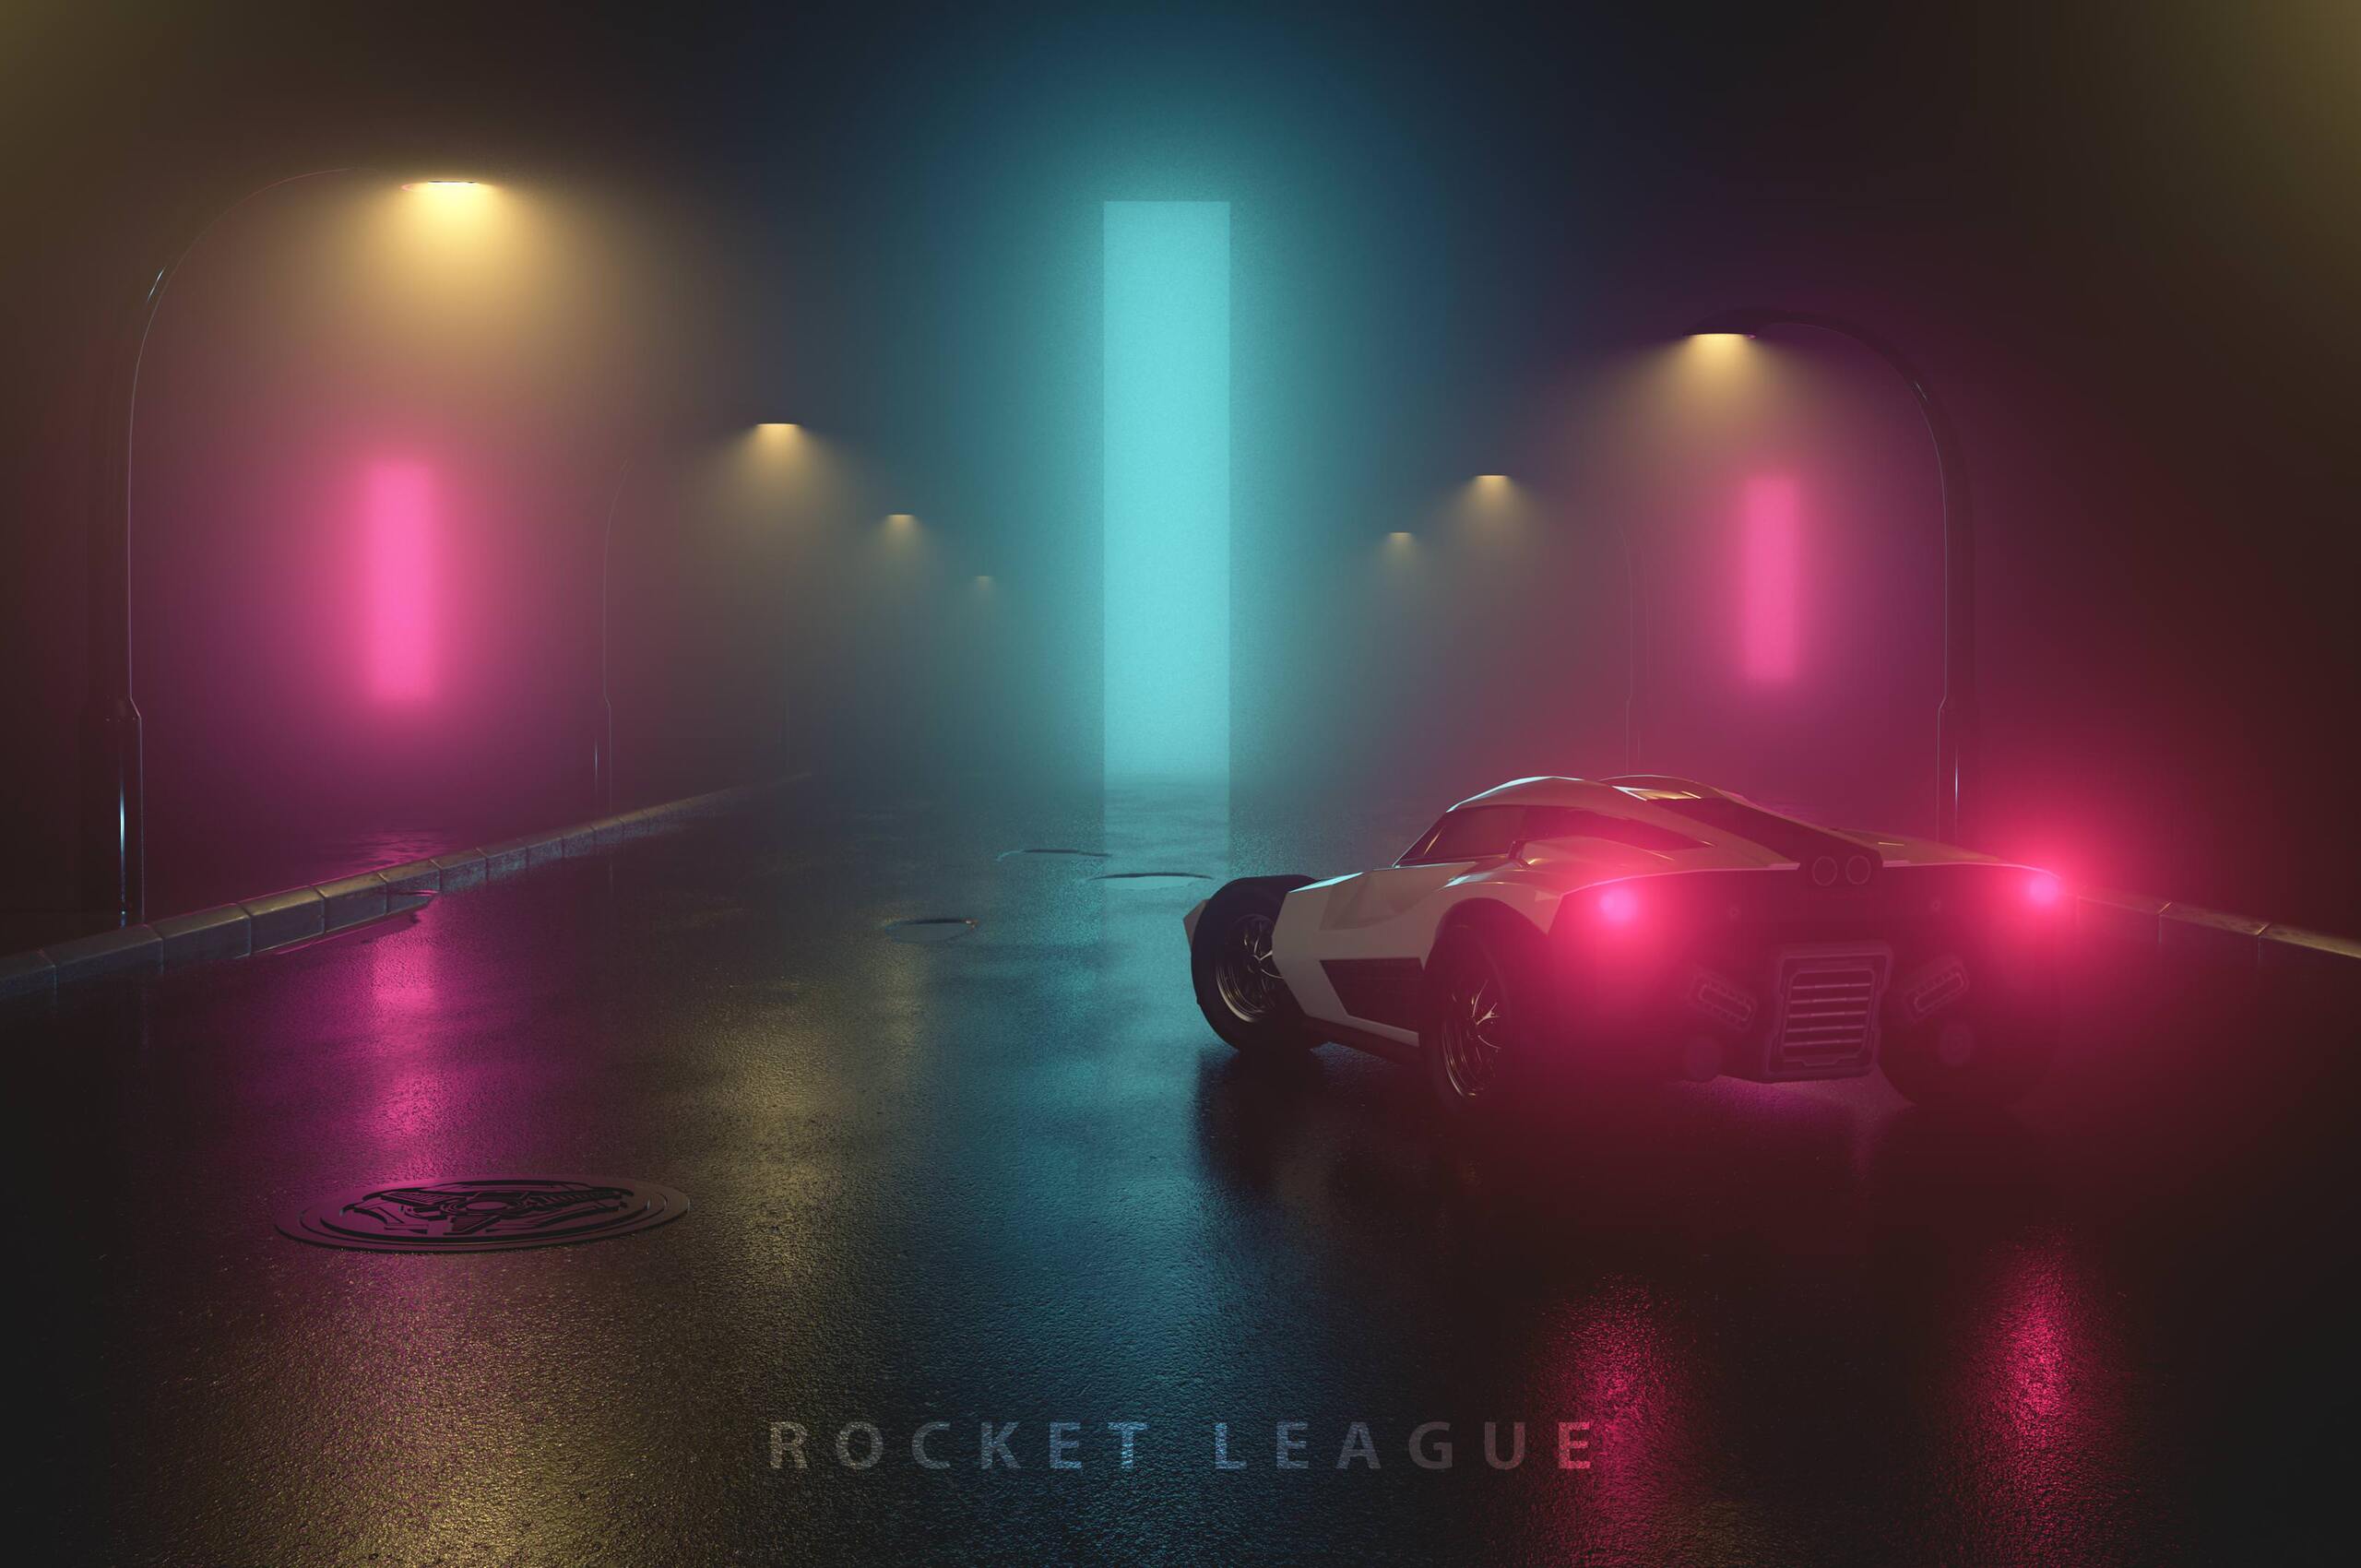 Rocket League Fanart In 2560x1700 Resolution. rocket-league-fanart-2i.jpg. 